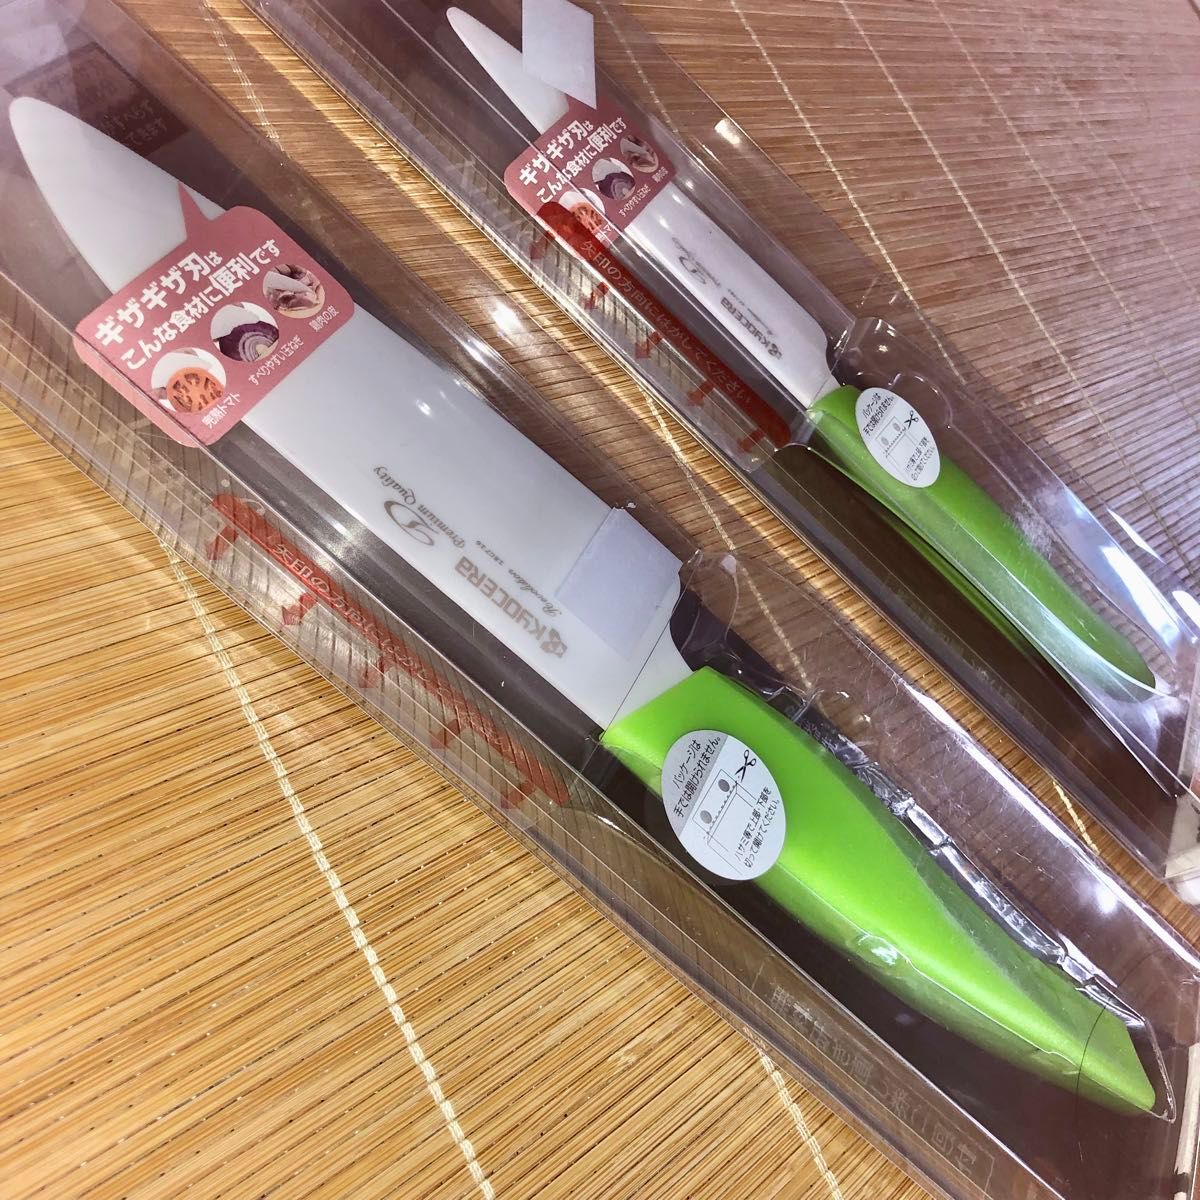 新品京セラ セラミックナイフ2本　ギザギザ刃 包丁13.5cm&11cmグリーン